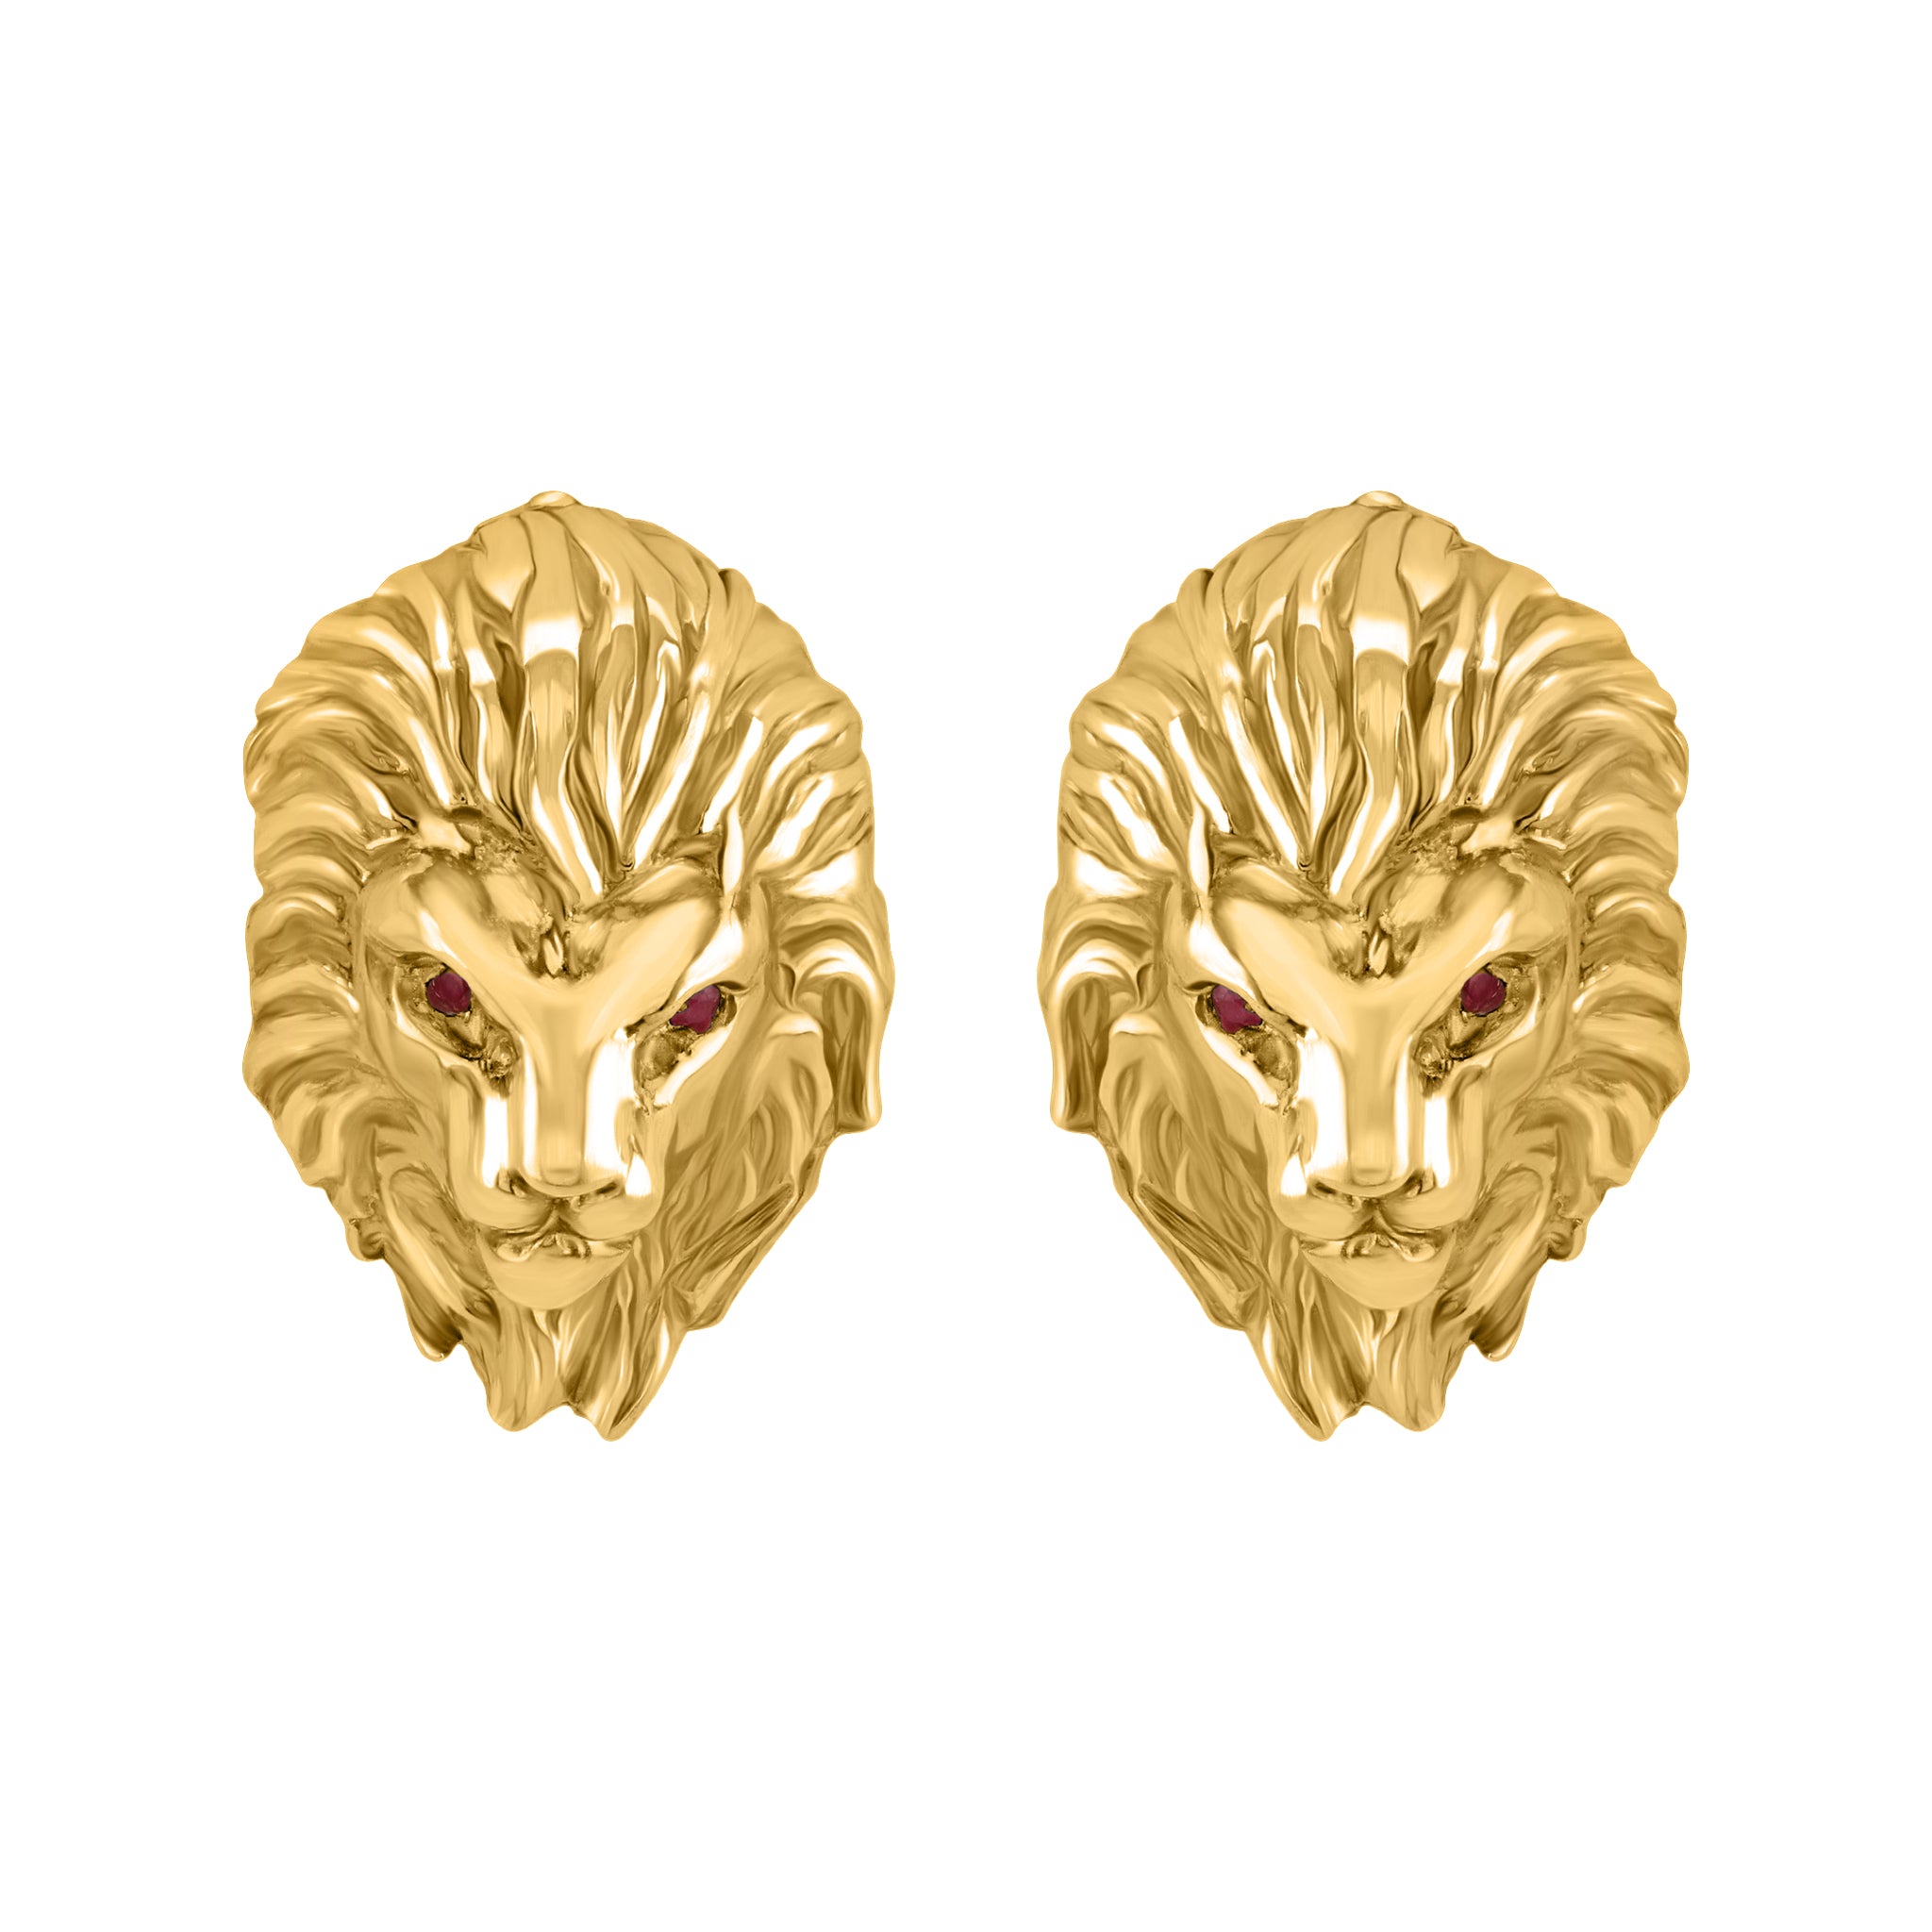 Sterling Silver Lion earrings